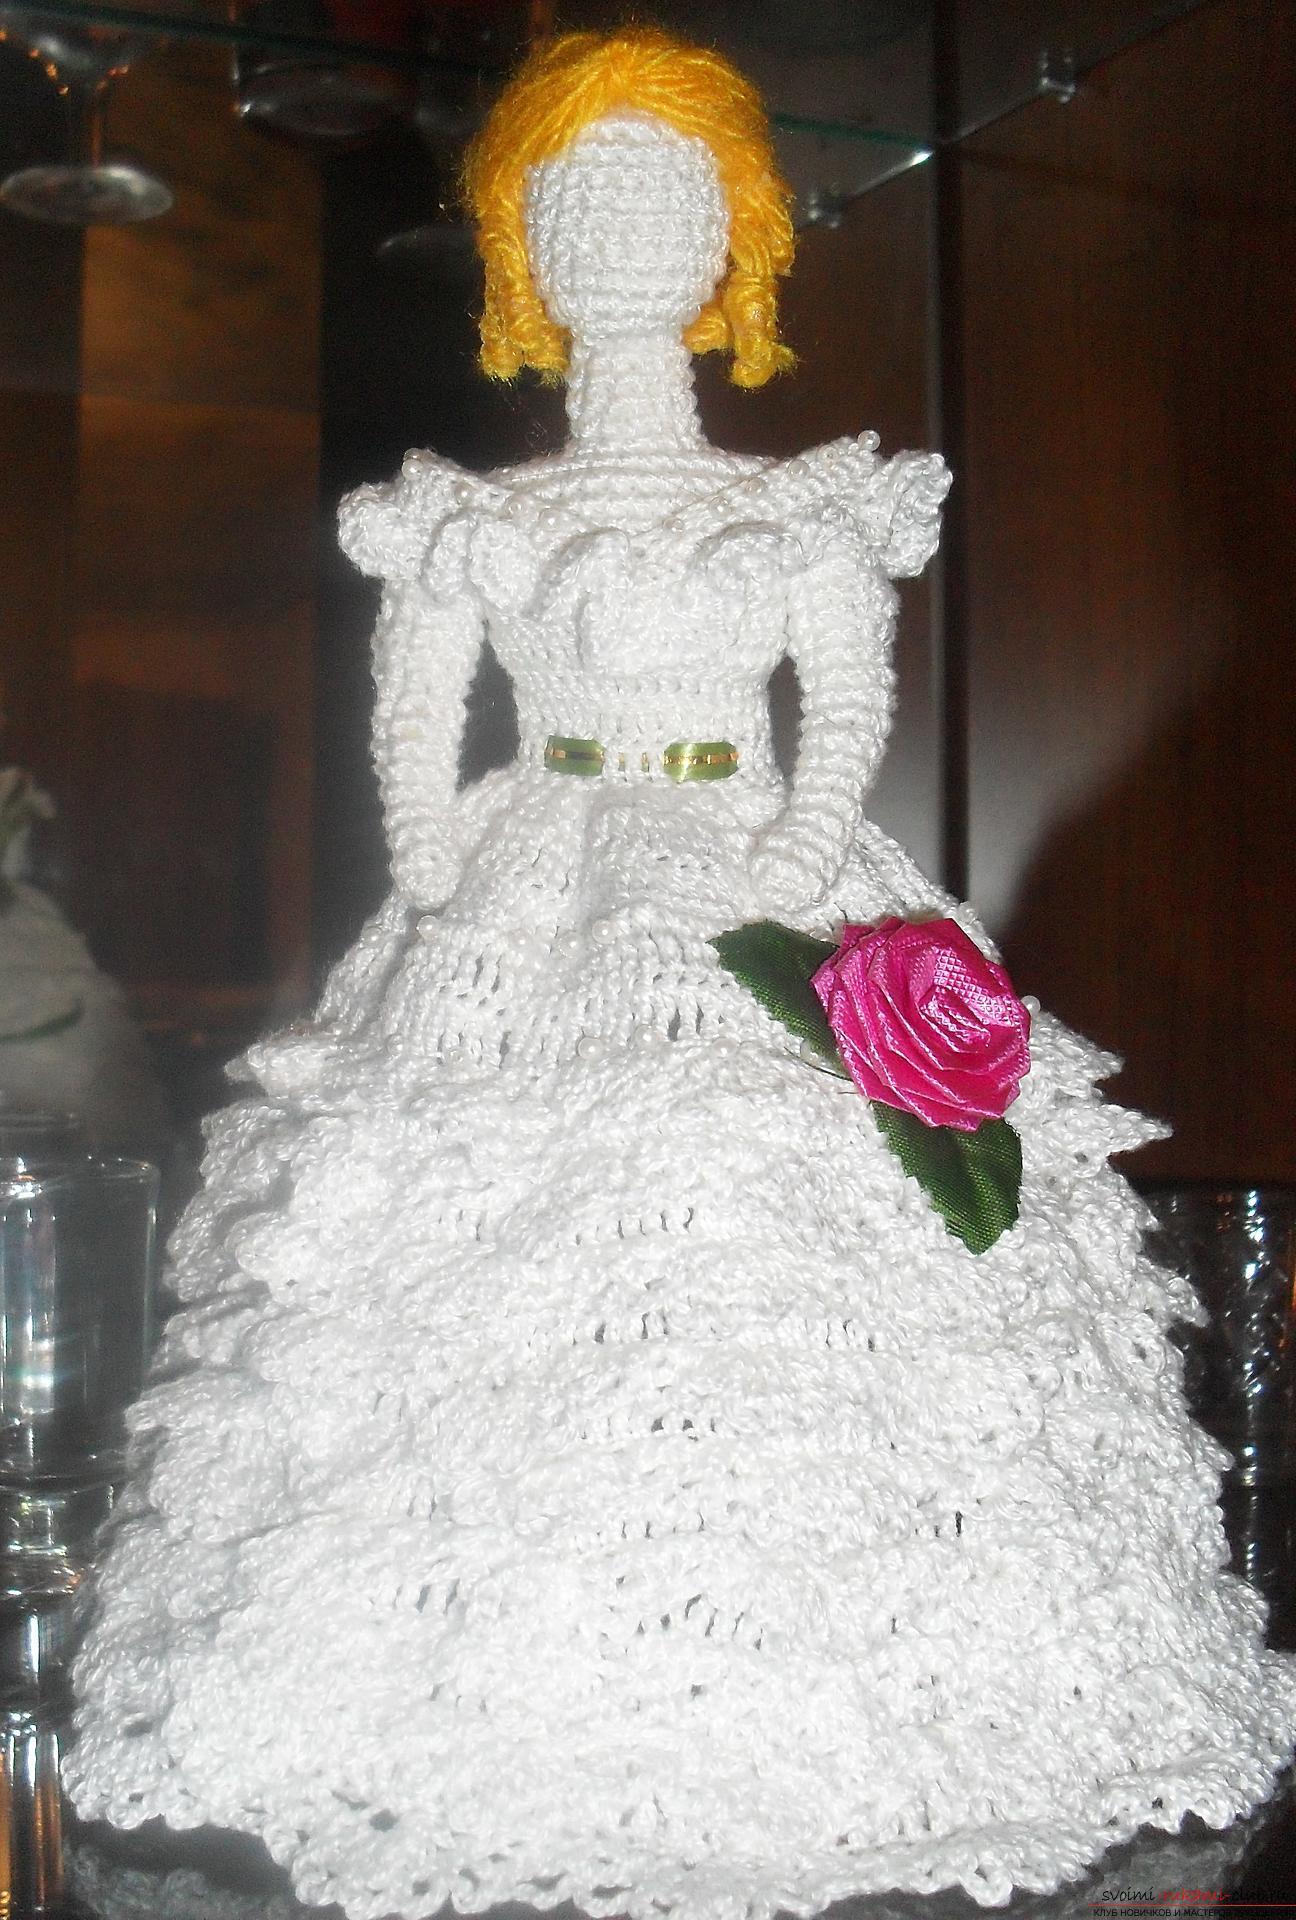 Идея для рукоделия своими руками - кукла-невеста, связанная крючком. Фото №1